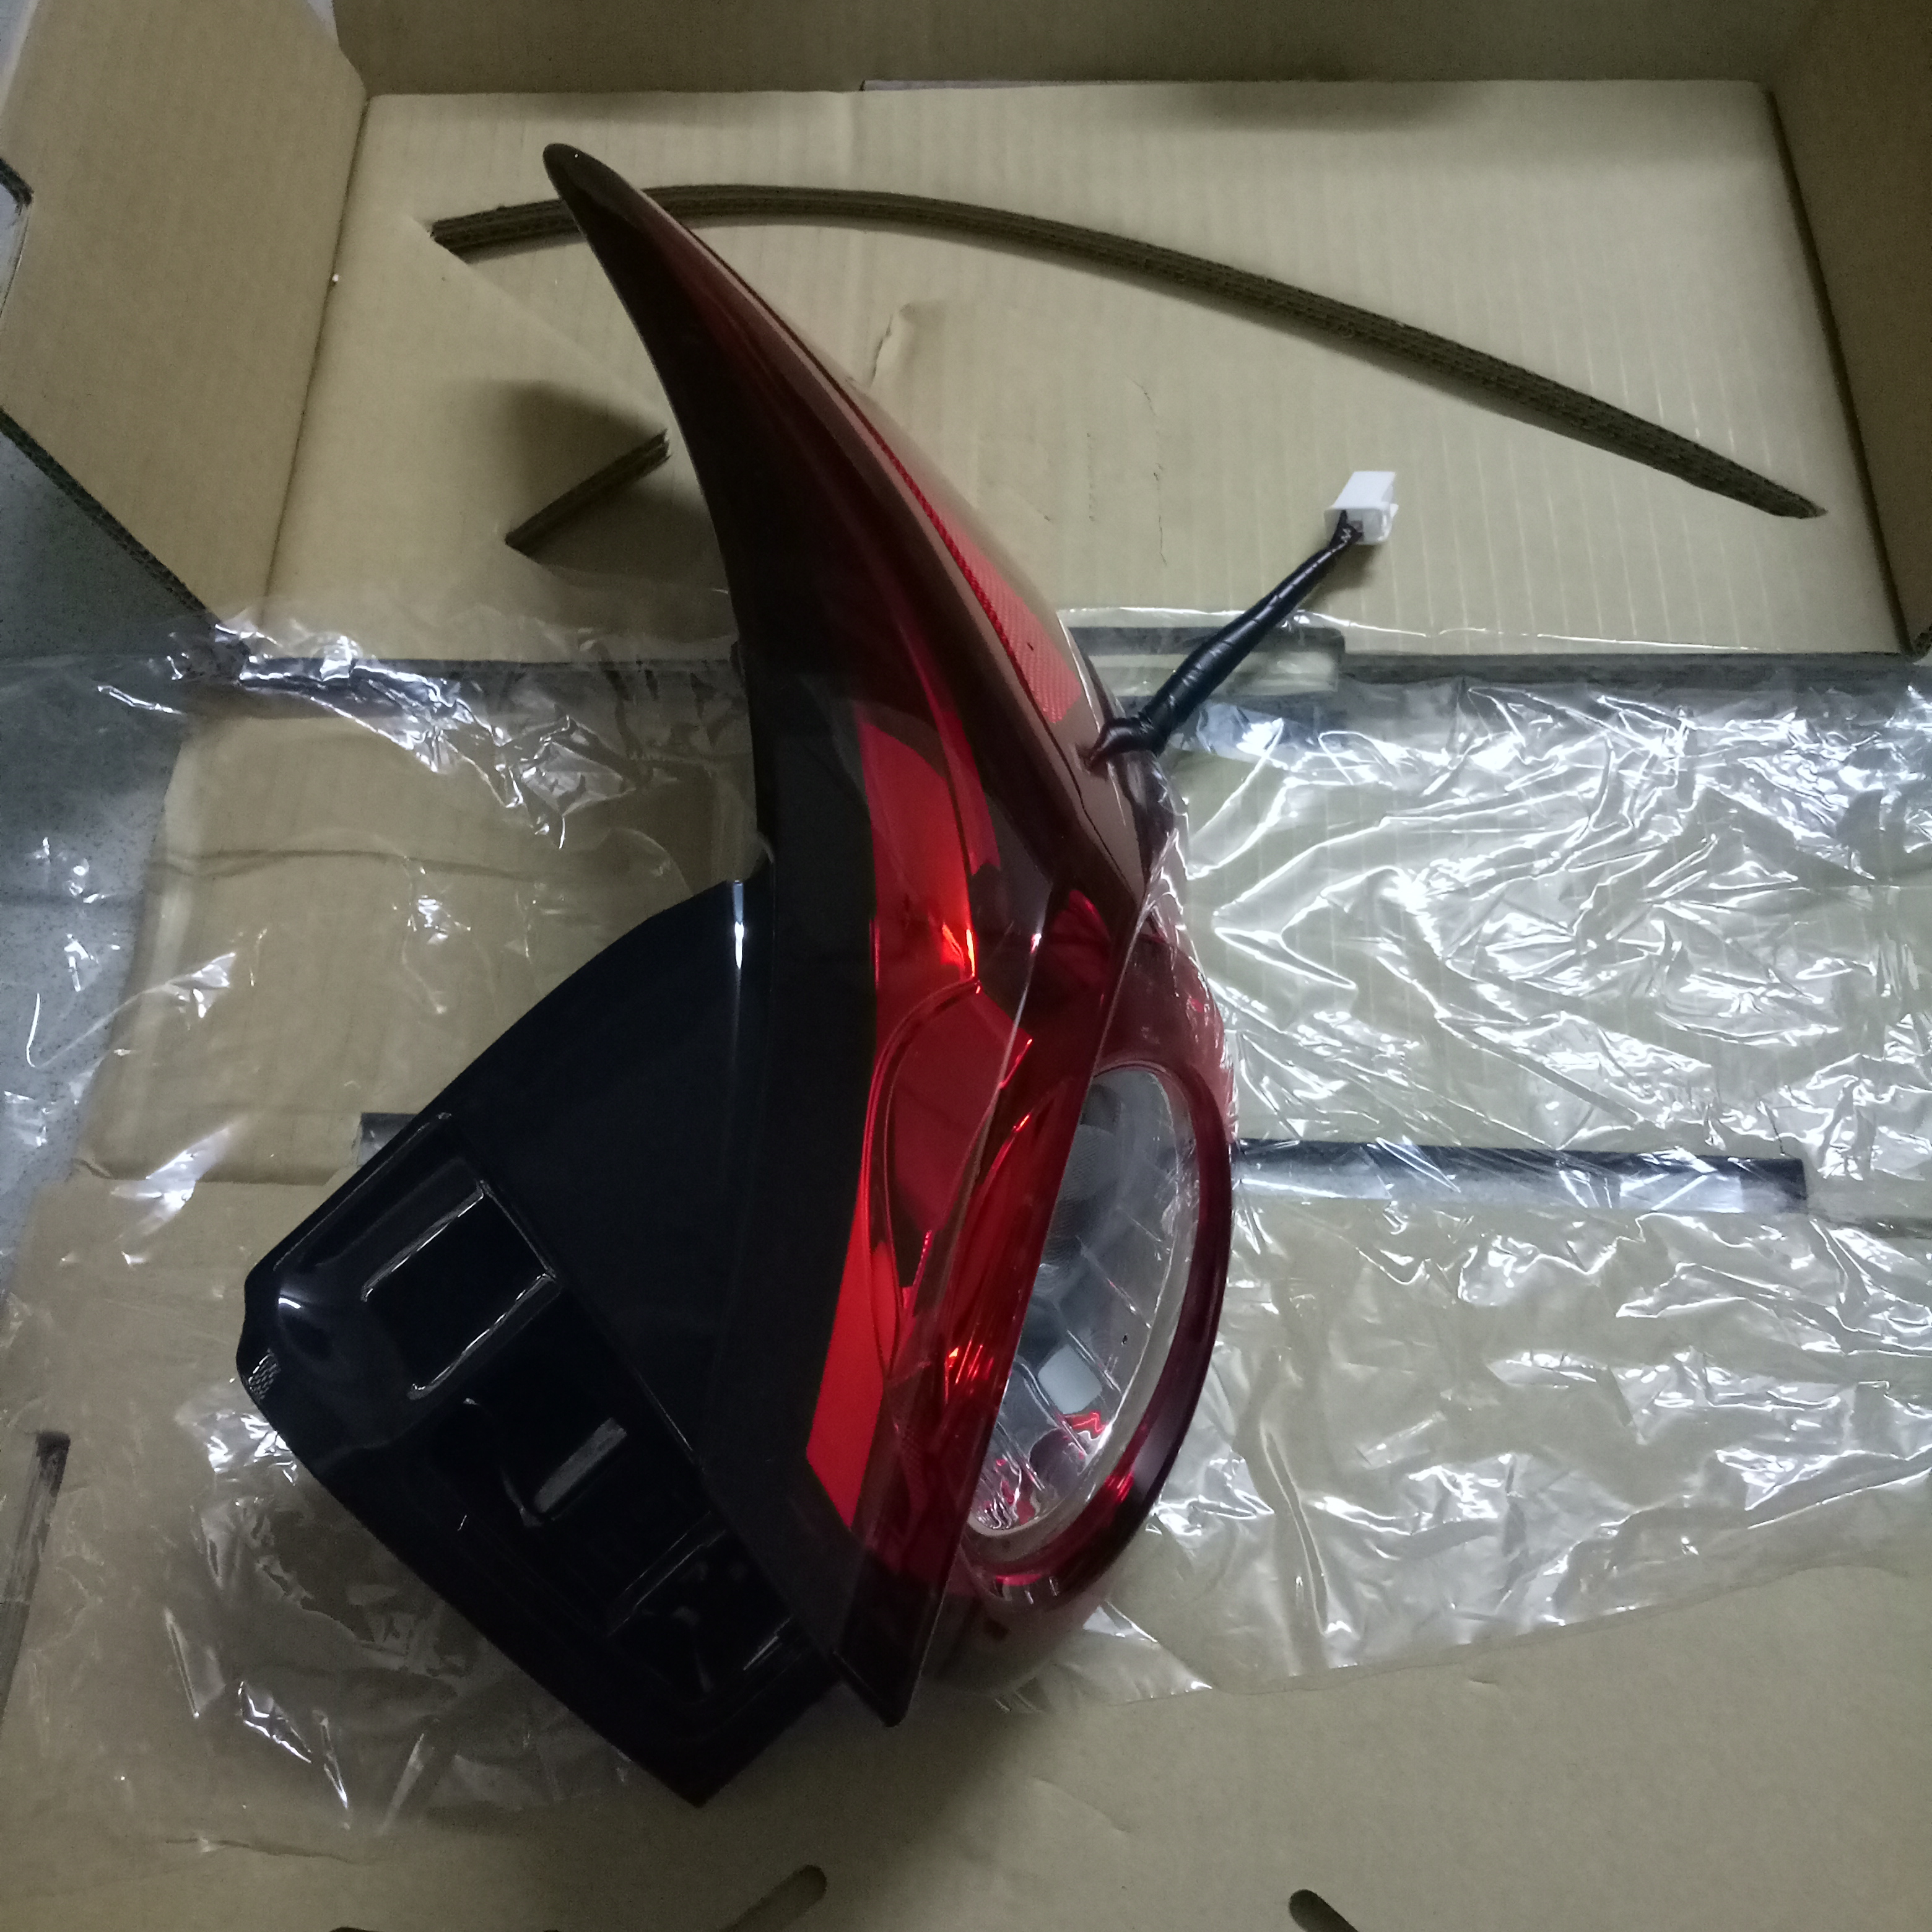 Cụm đèn hậu Mazda CX-9 chính hãng KT57-51-150B giá tốt tại khophutungoto.com